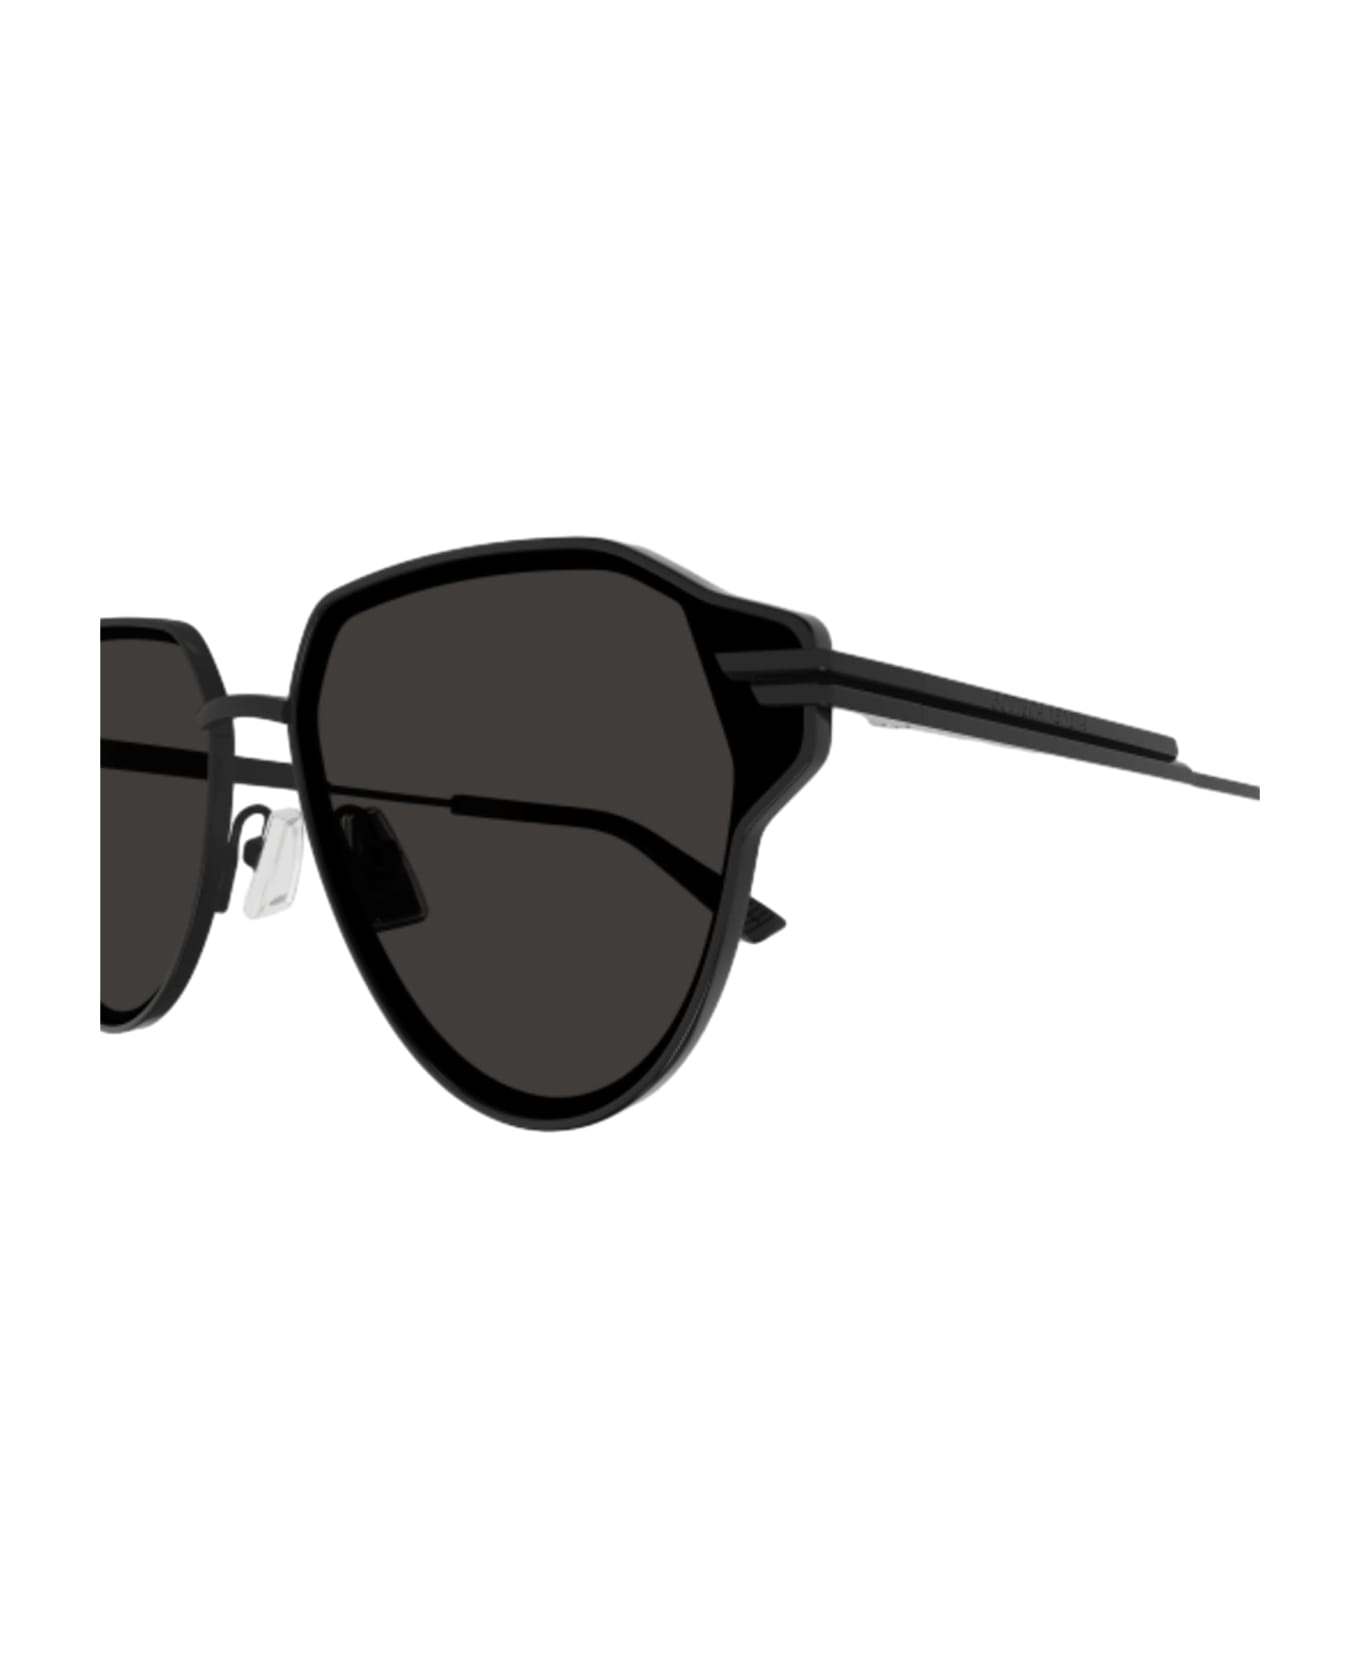 Bottega Veneta Eyewear Bv1271s-001 - Black Sunglasses - Black